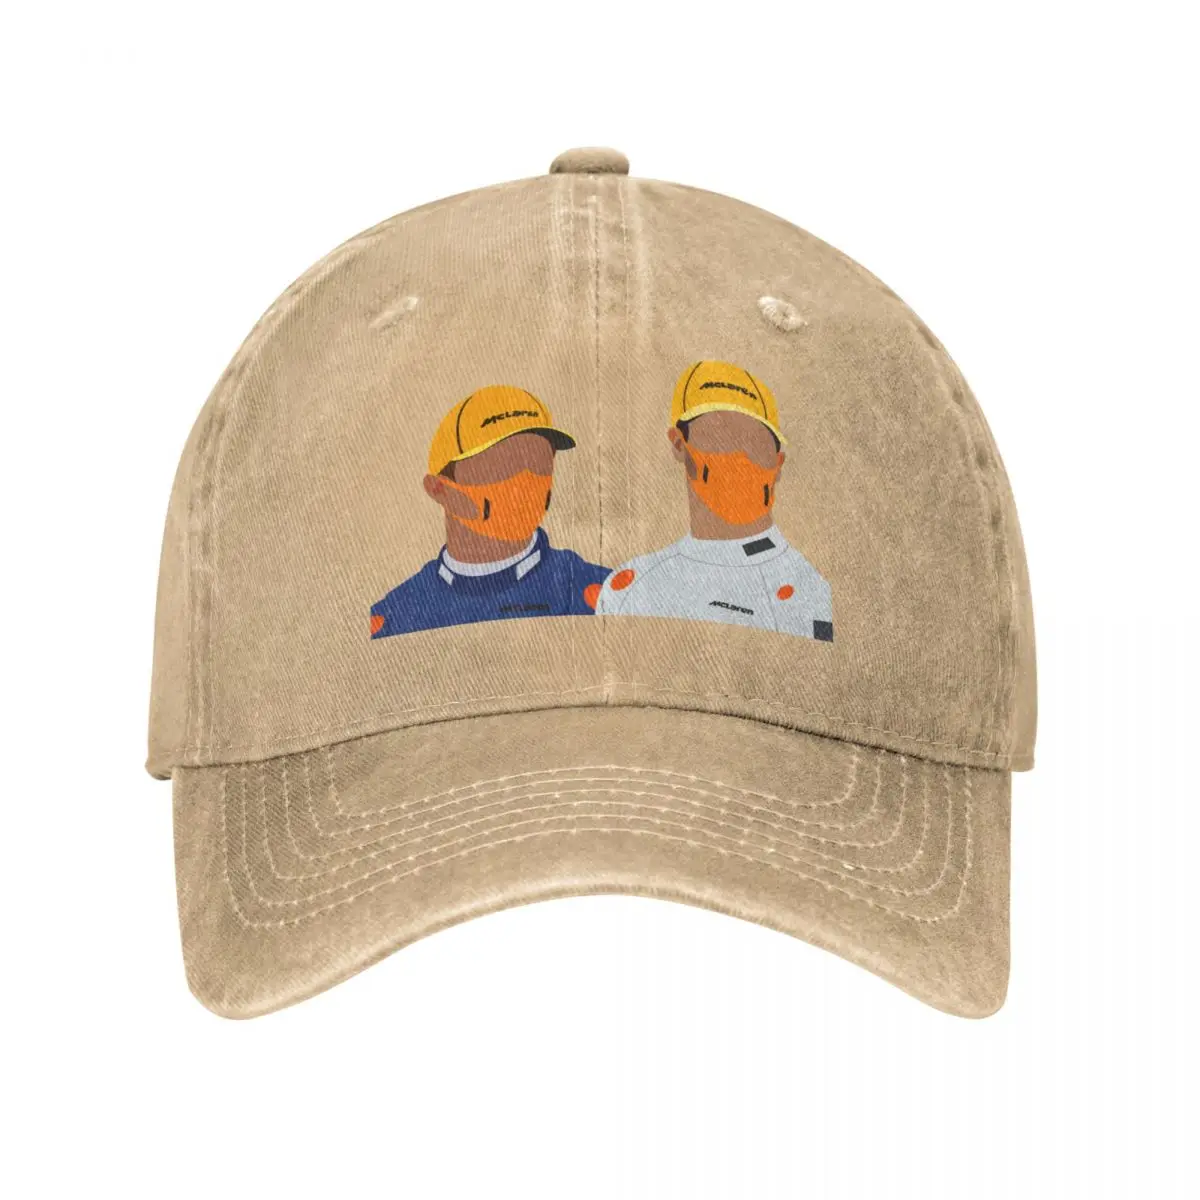 

Даниэль Риккардо и Лэндо Норрис Женская Спортивная Кепка люксового бренда, кепки для гольфа, женские и мужские кепки